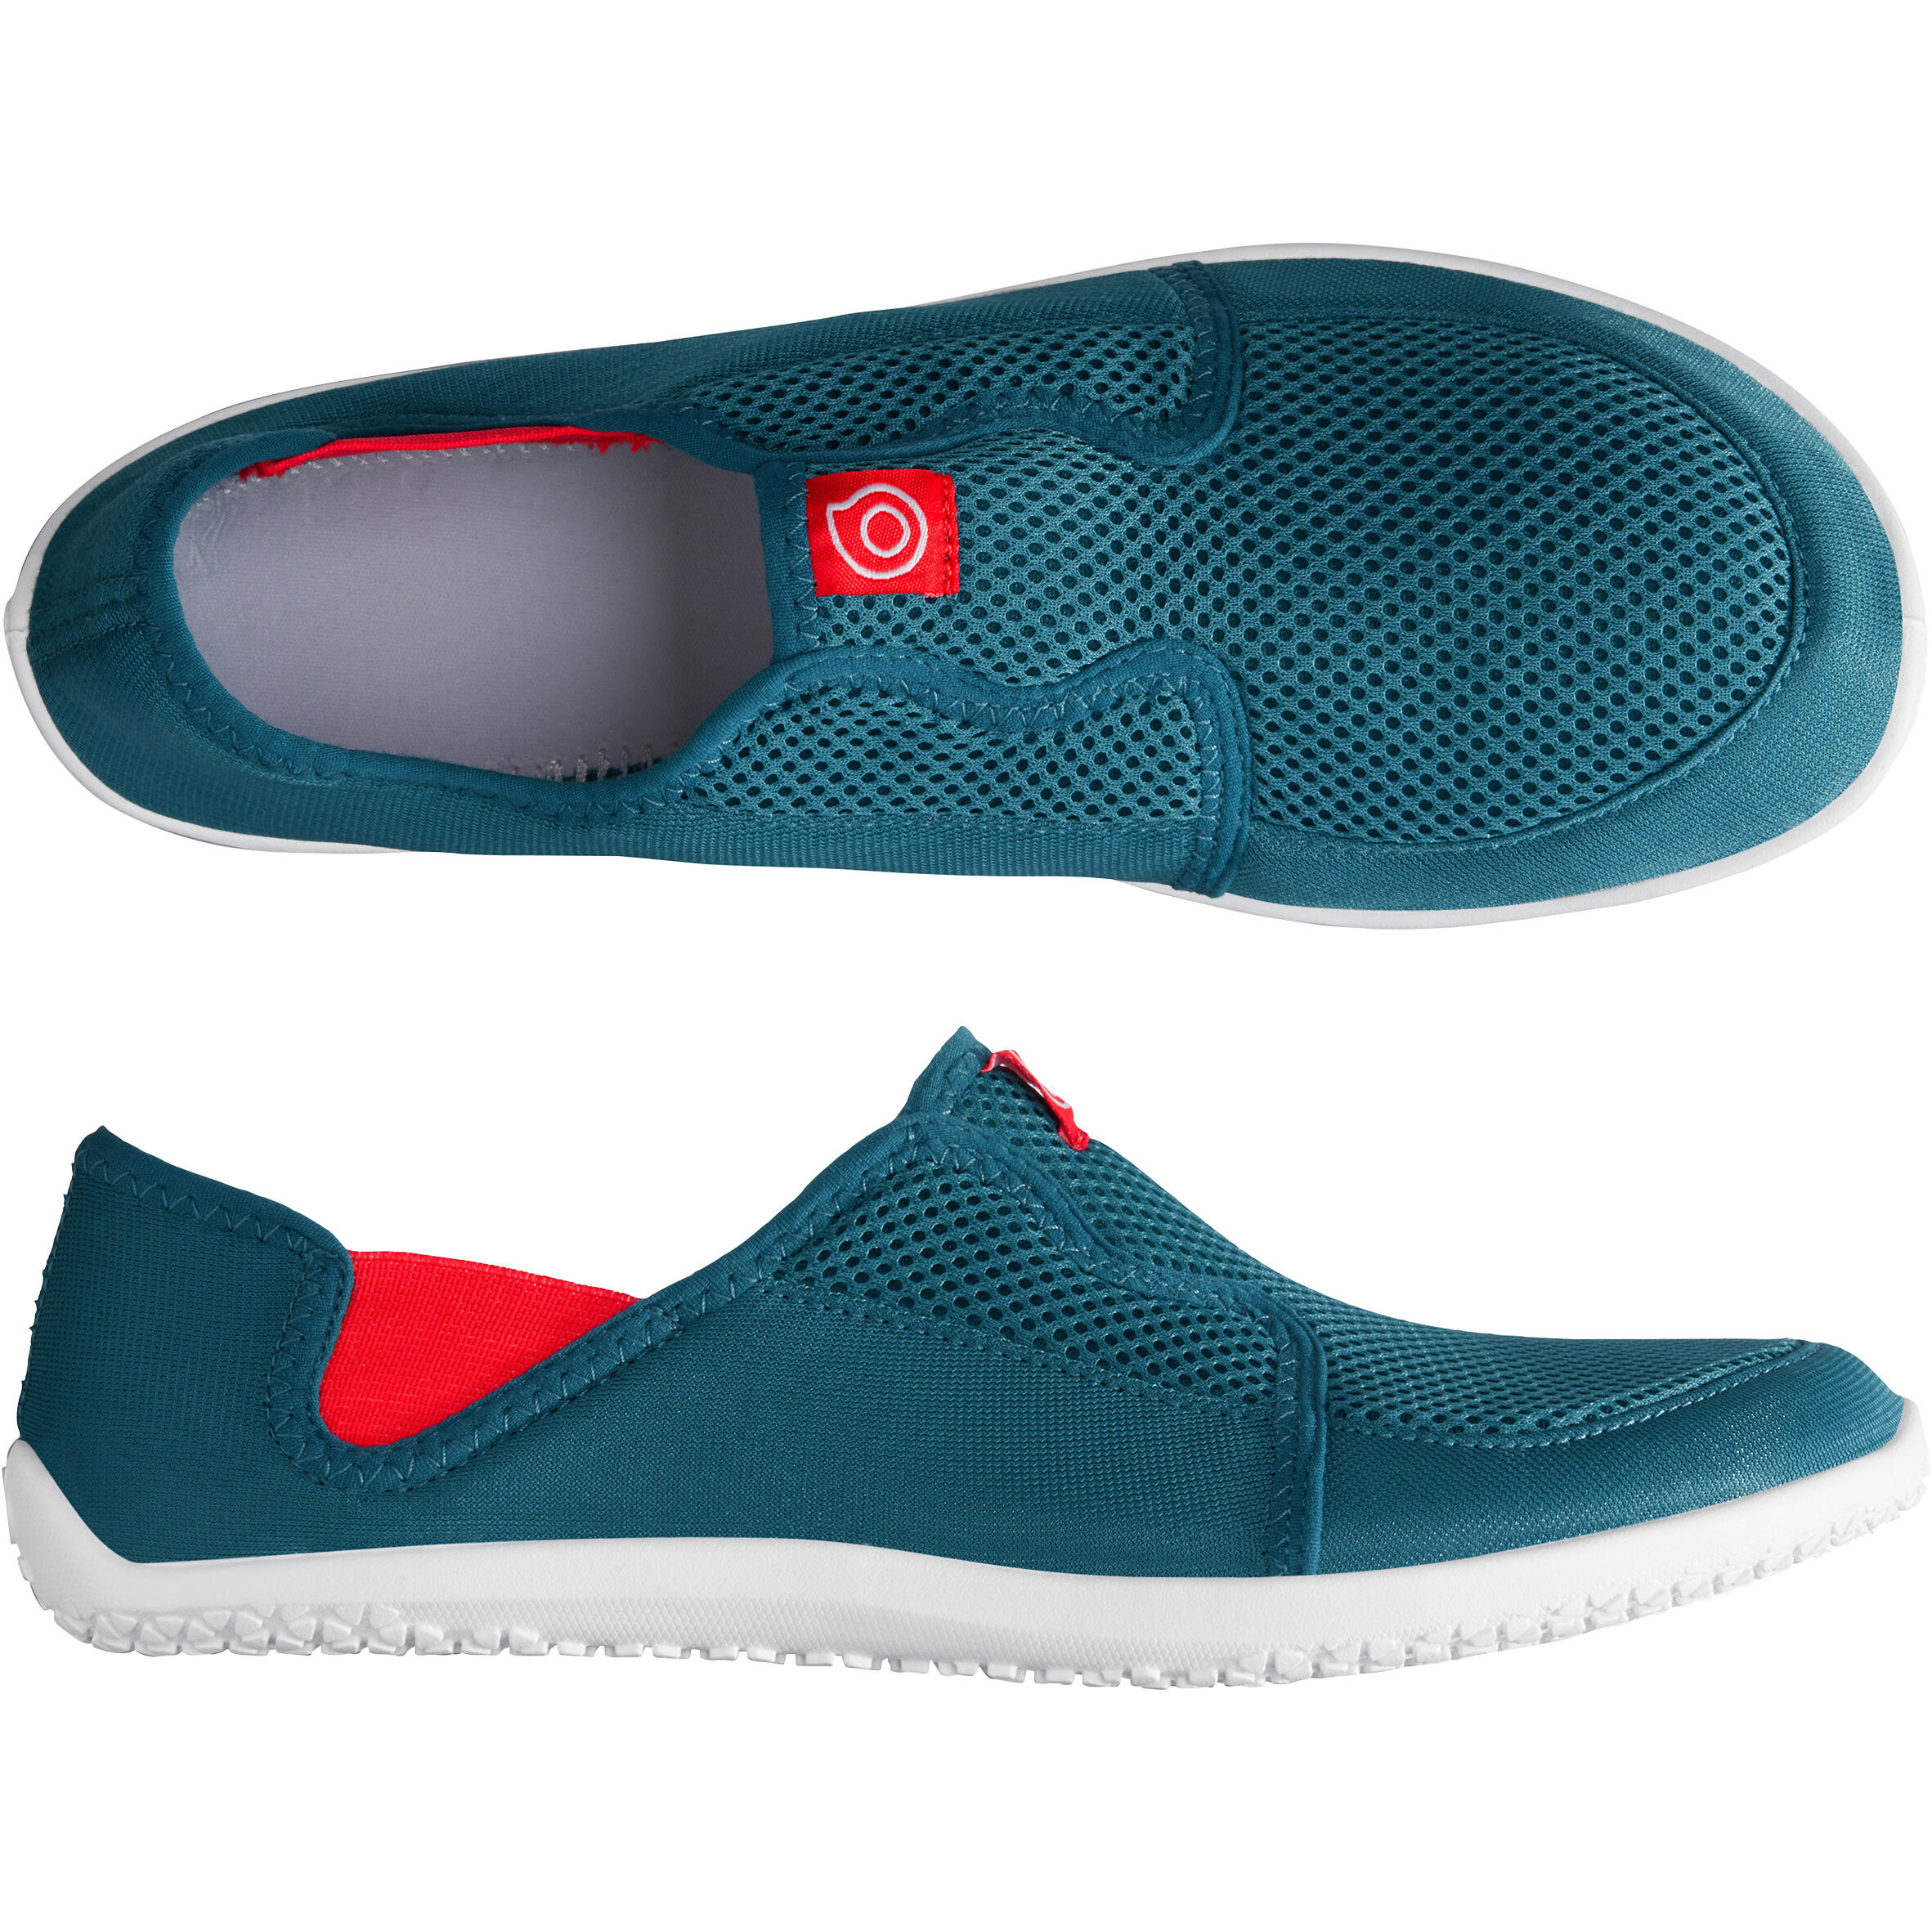 Adult Aquashoes 120 - Blue Red